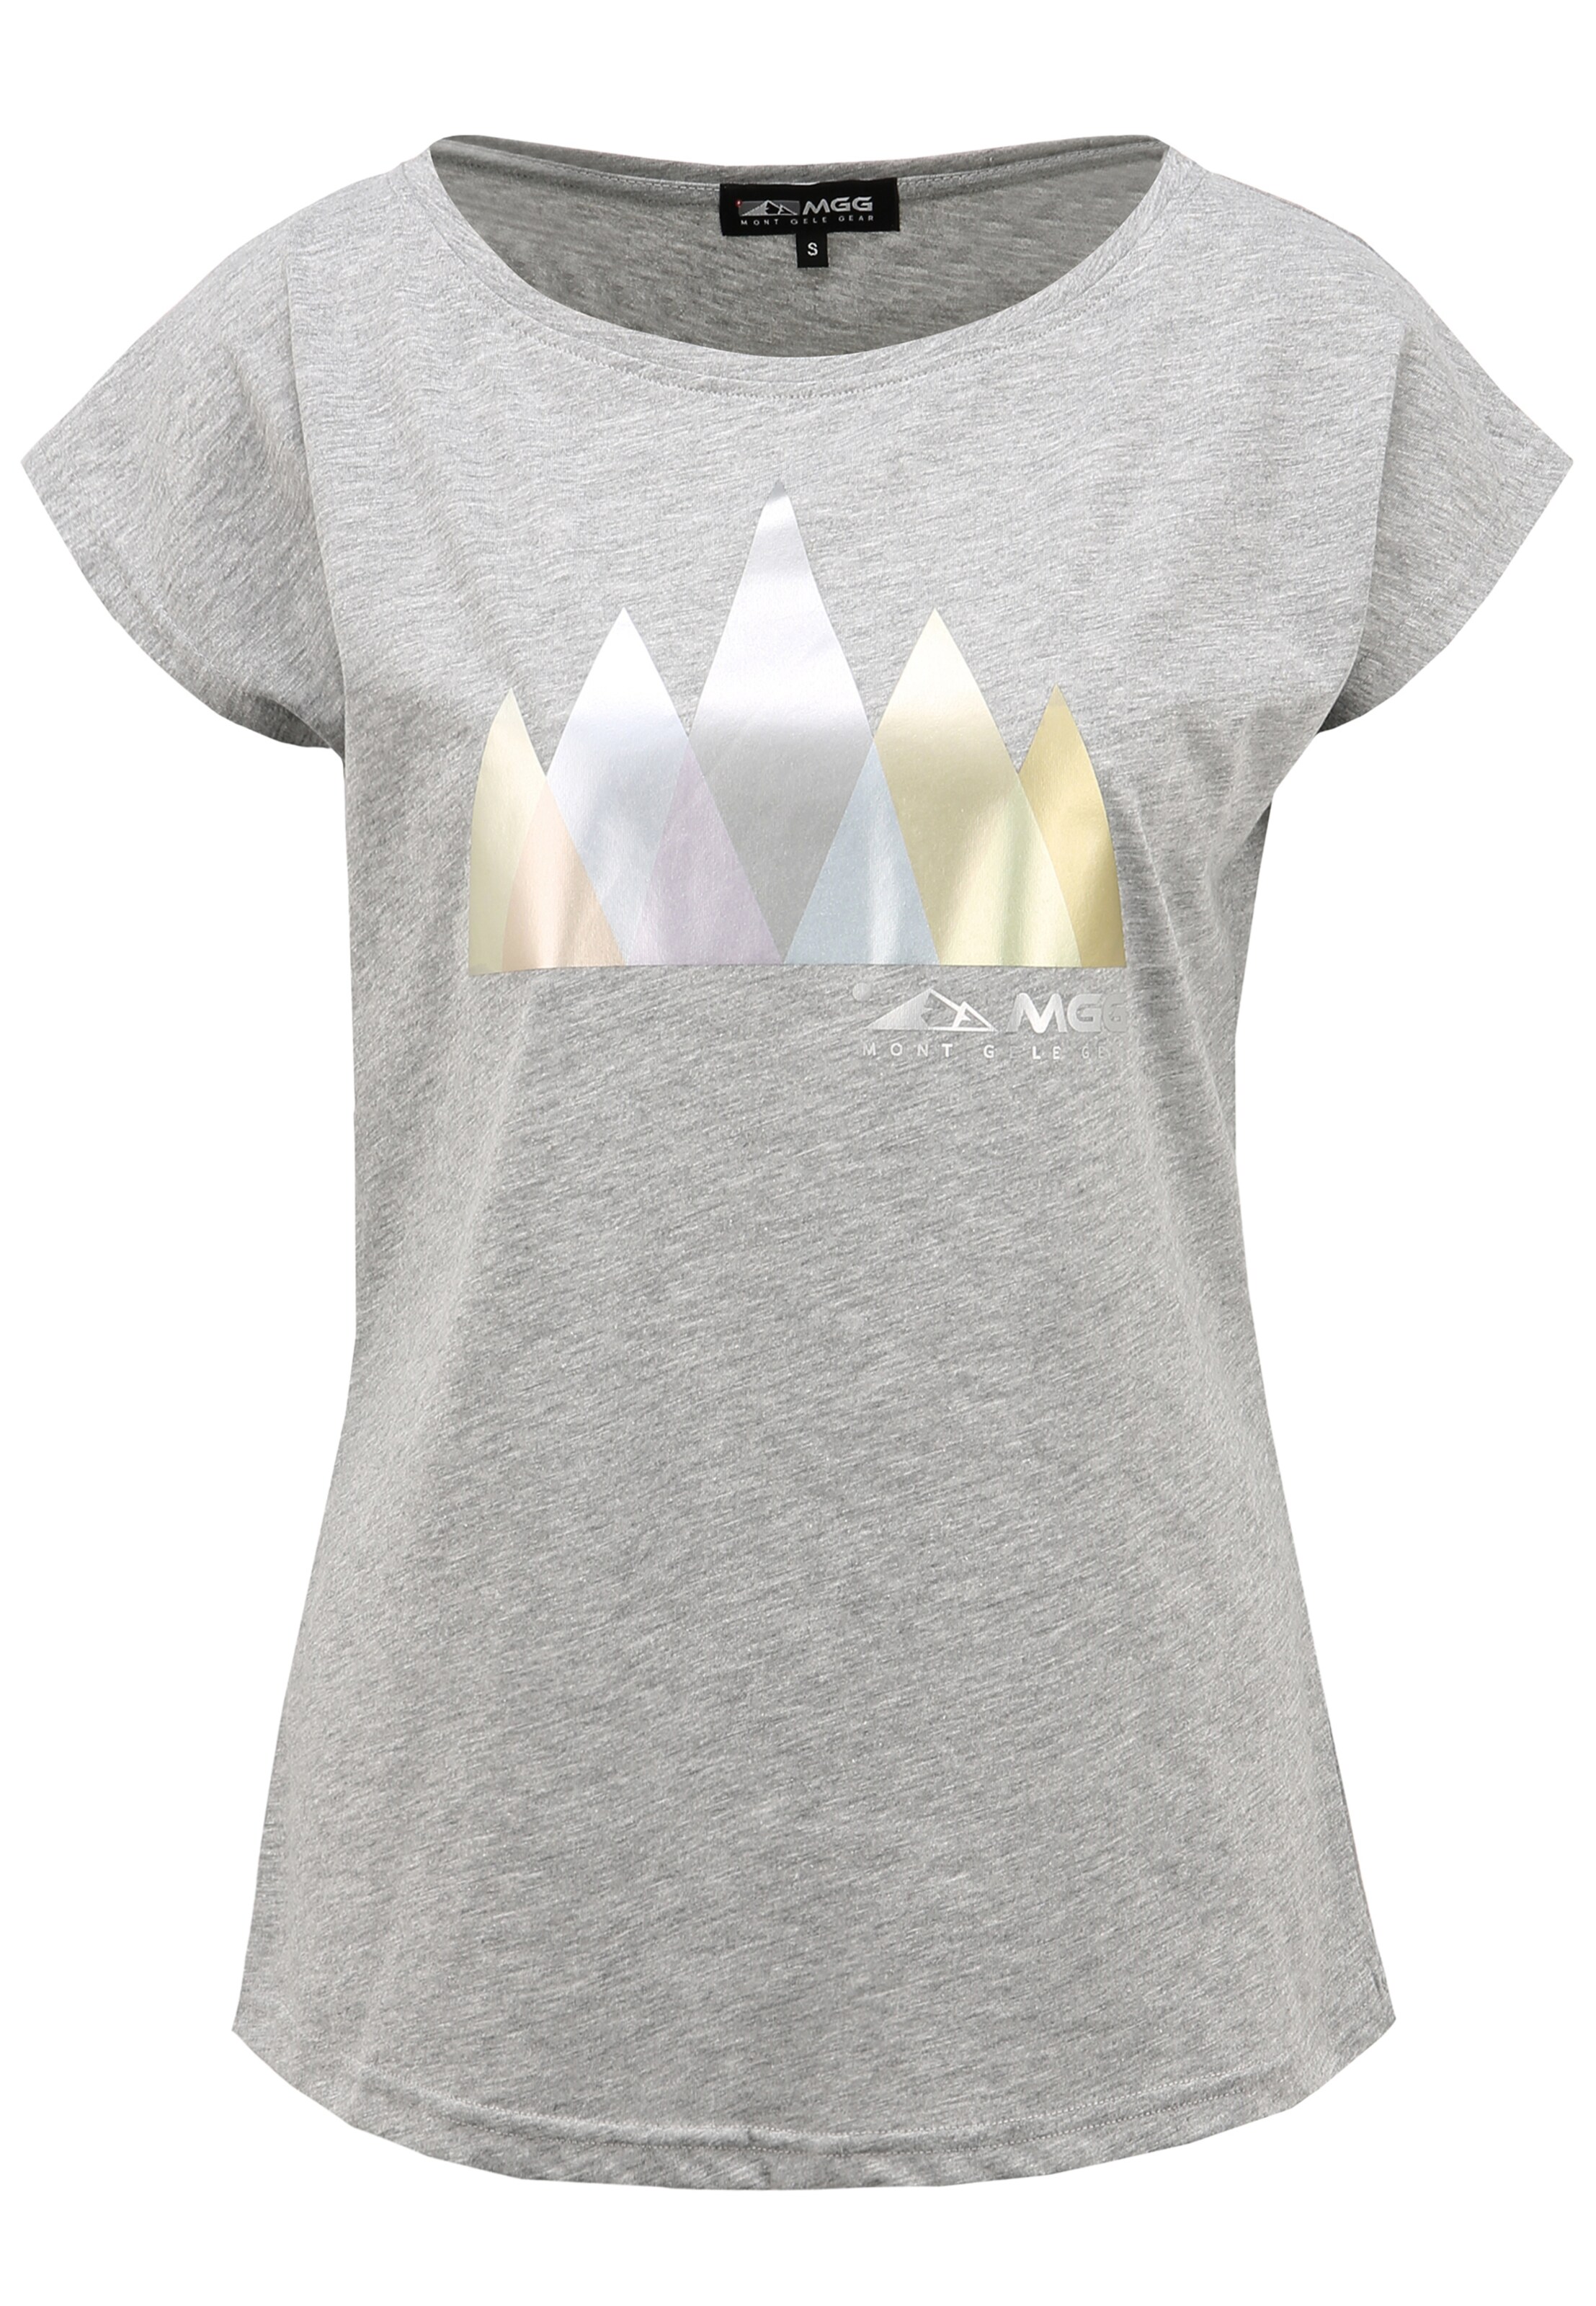 Frauen Shirts & Tops MGG T-Shirt in Grau - NU05153